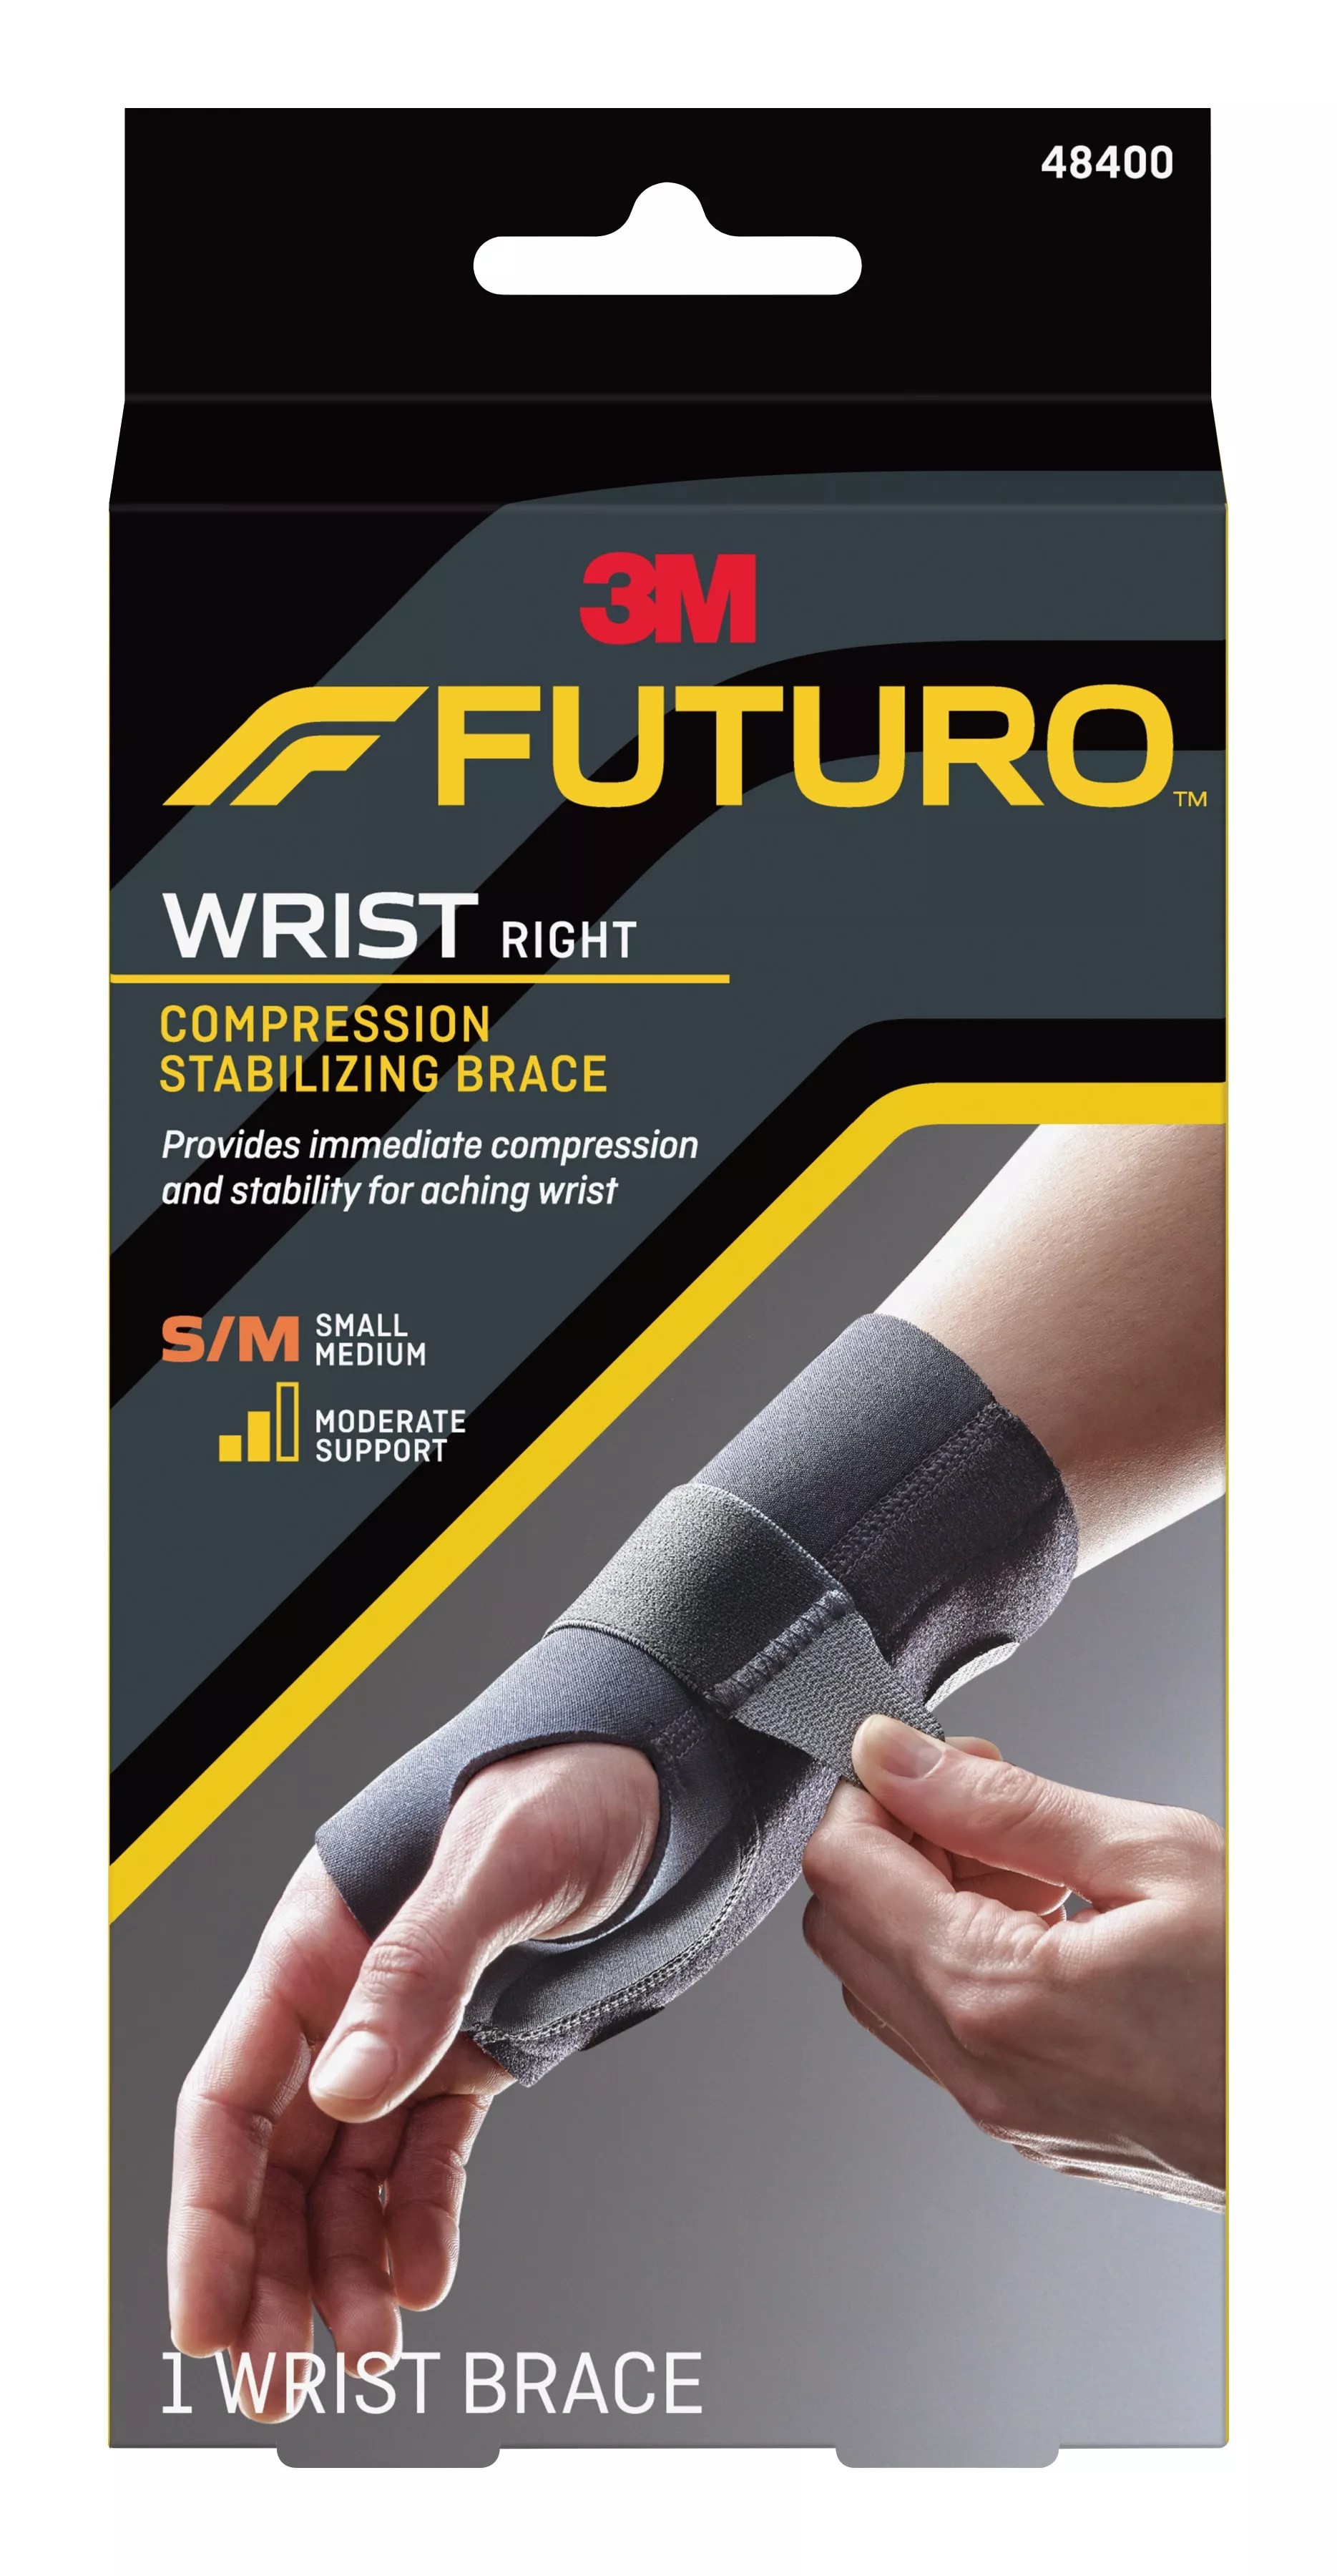 FUTURO™ Compression Stabilizing Wrist Brace, 48400ENR, Right Hand,
Small/Medium